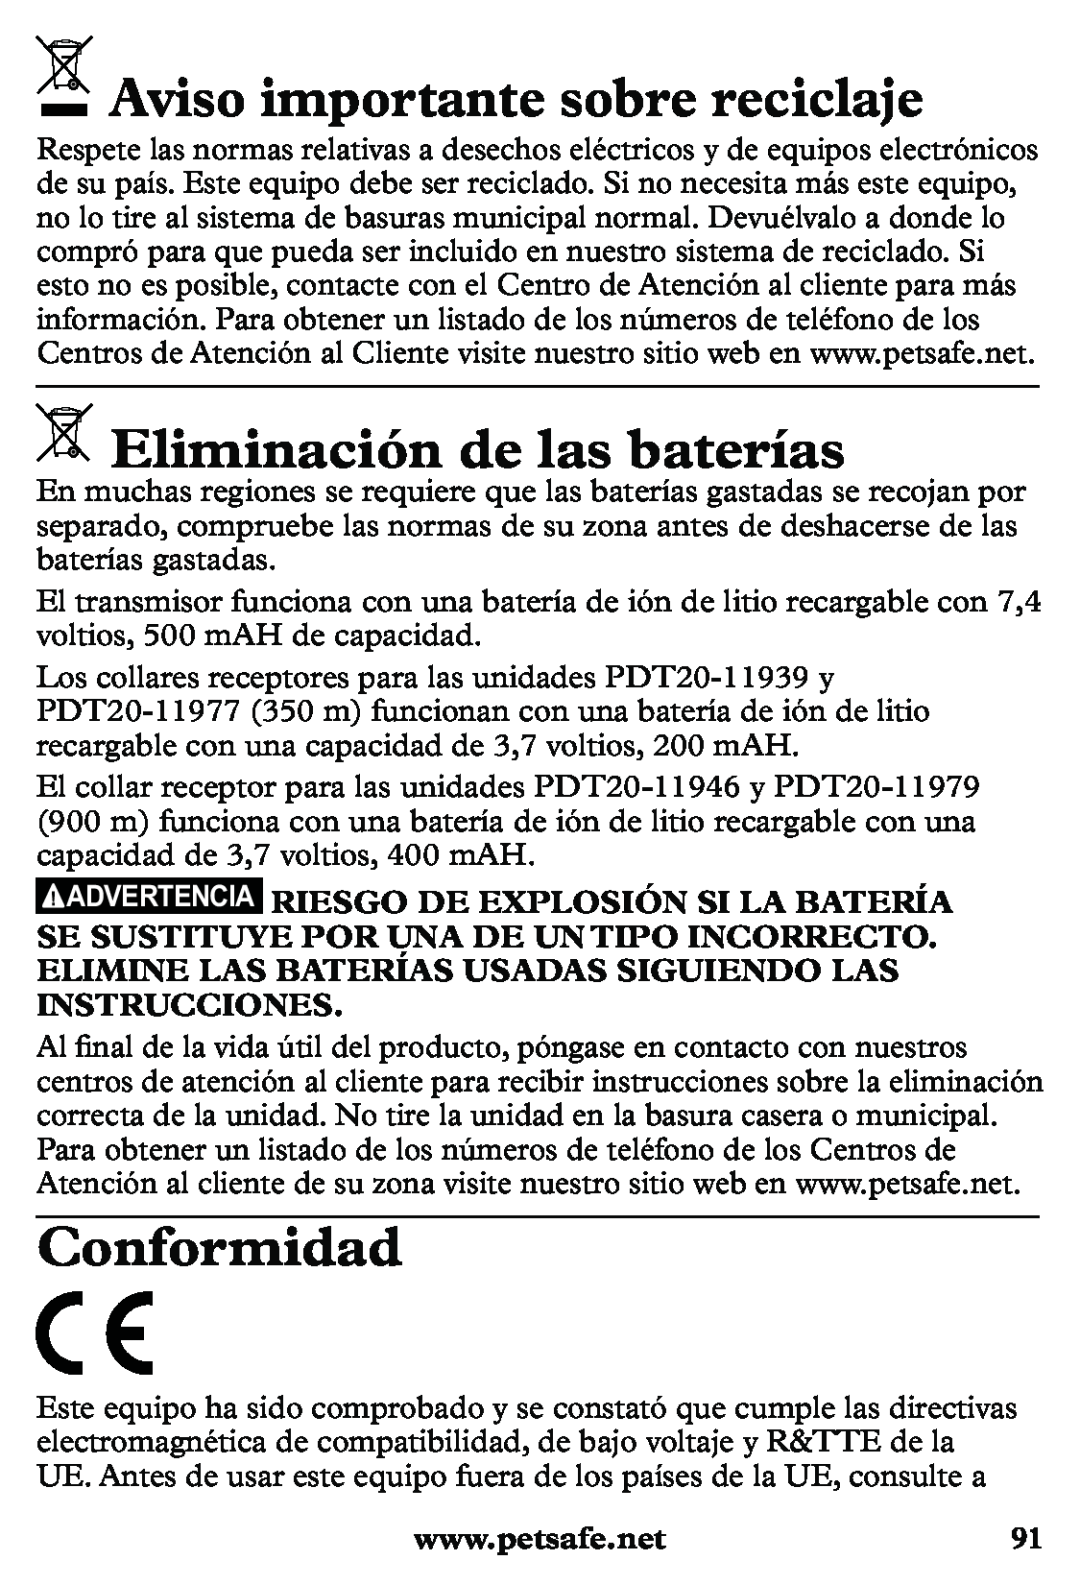 Petsafe PDT20-11939 manuel dutilisation Aviso importante sobre reciclaje, Eliminación de las baterías, Conformidad 